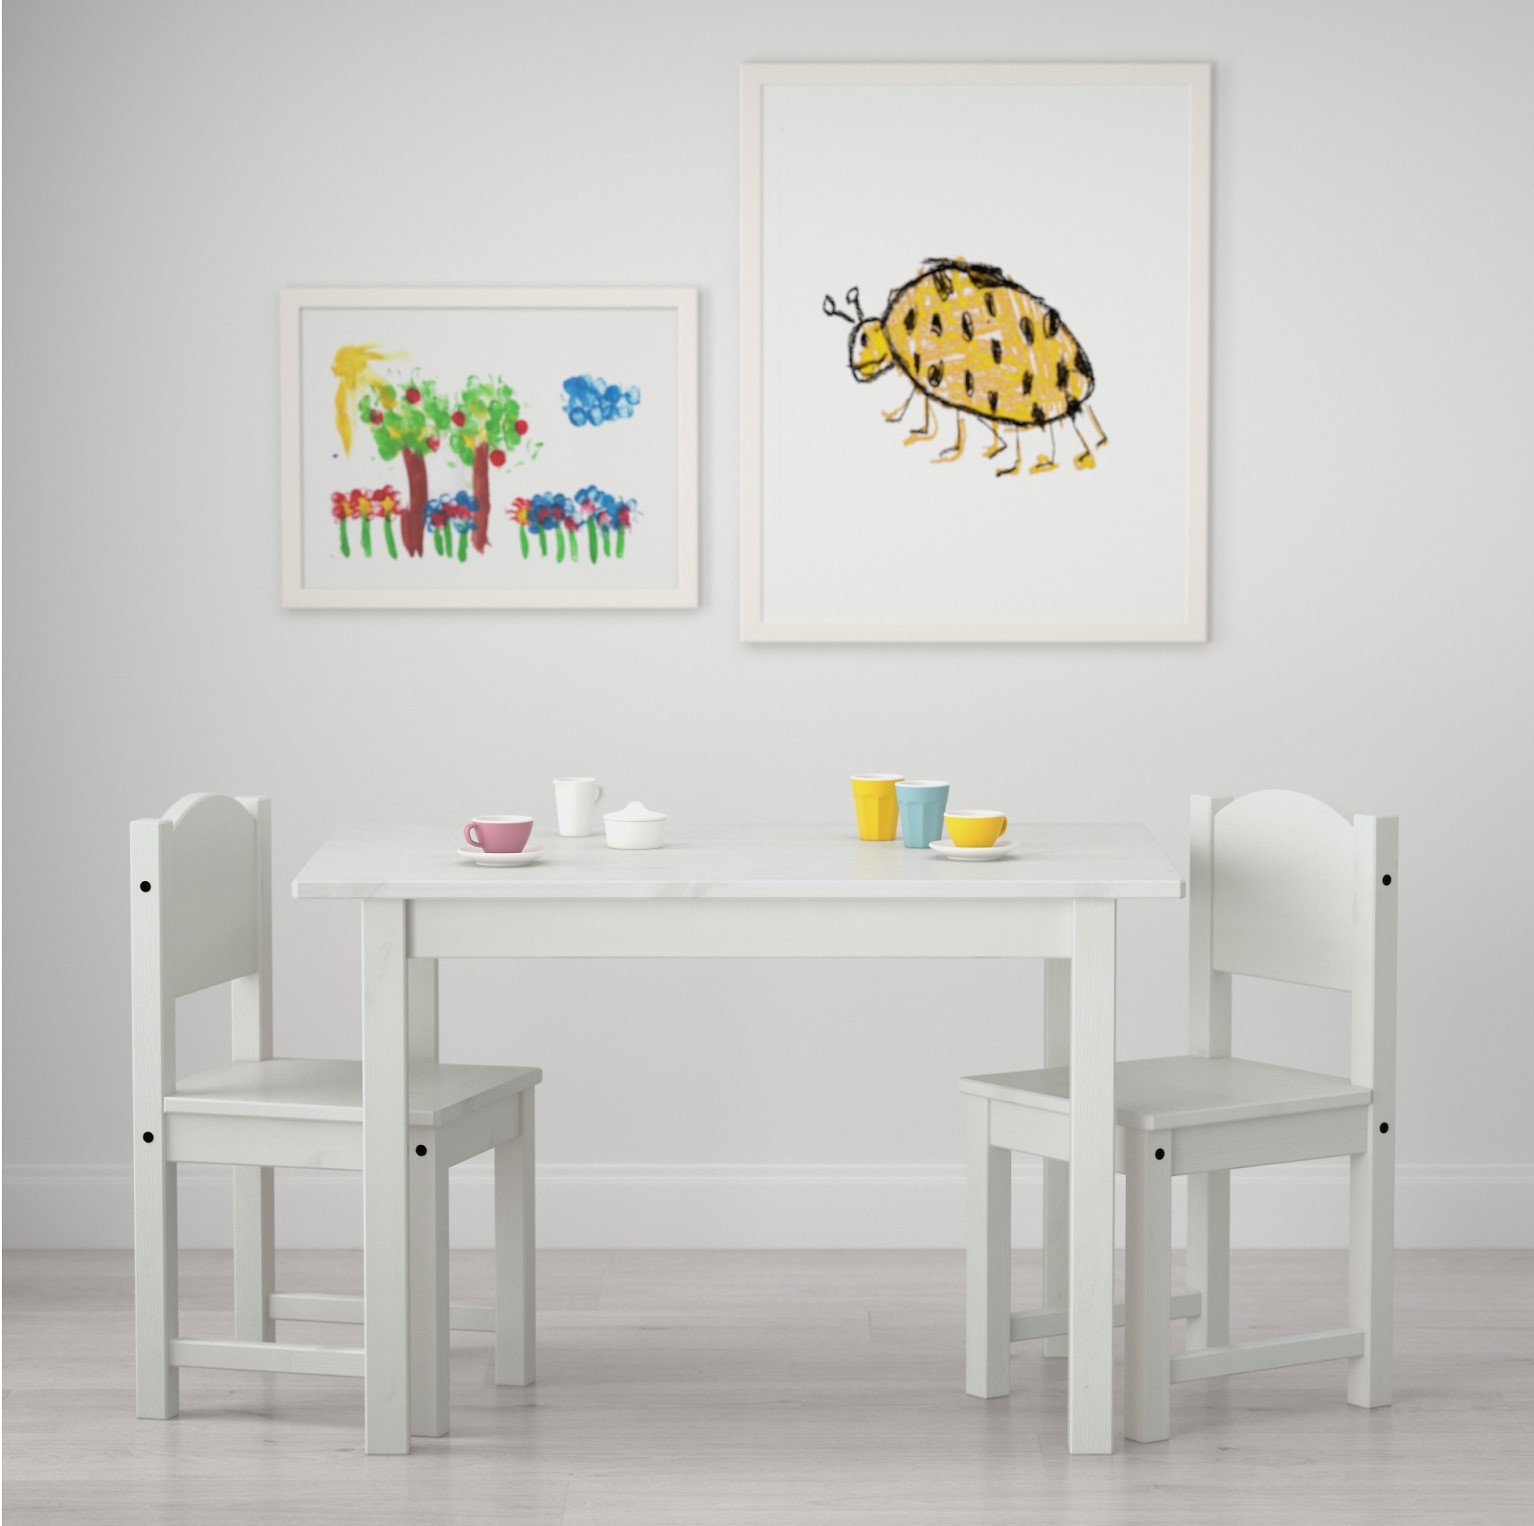 столы из фанеры для детских комнат на заказ москва, отделка помещений детских